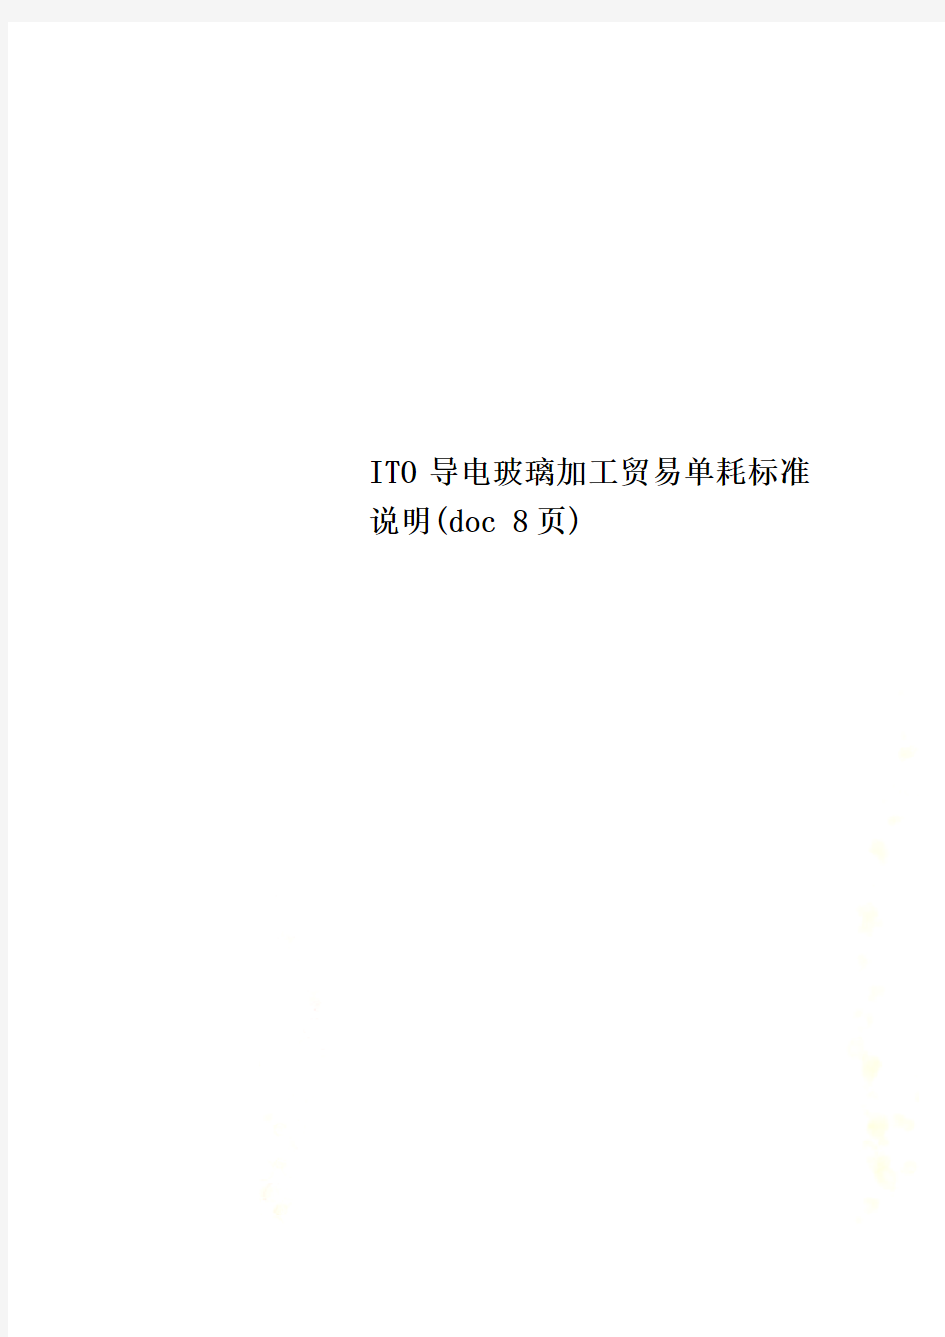 ITO导电玻璃加工贸易单耗标准说明(doc 8页)